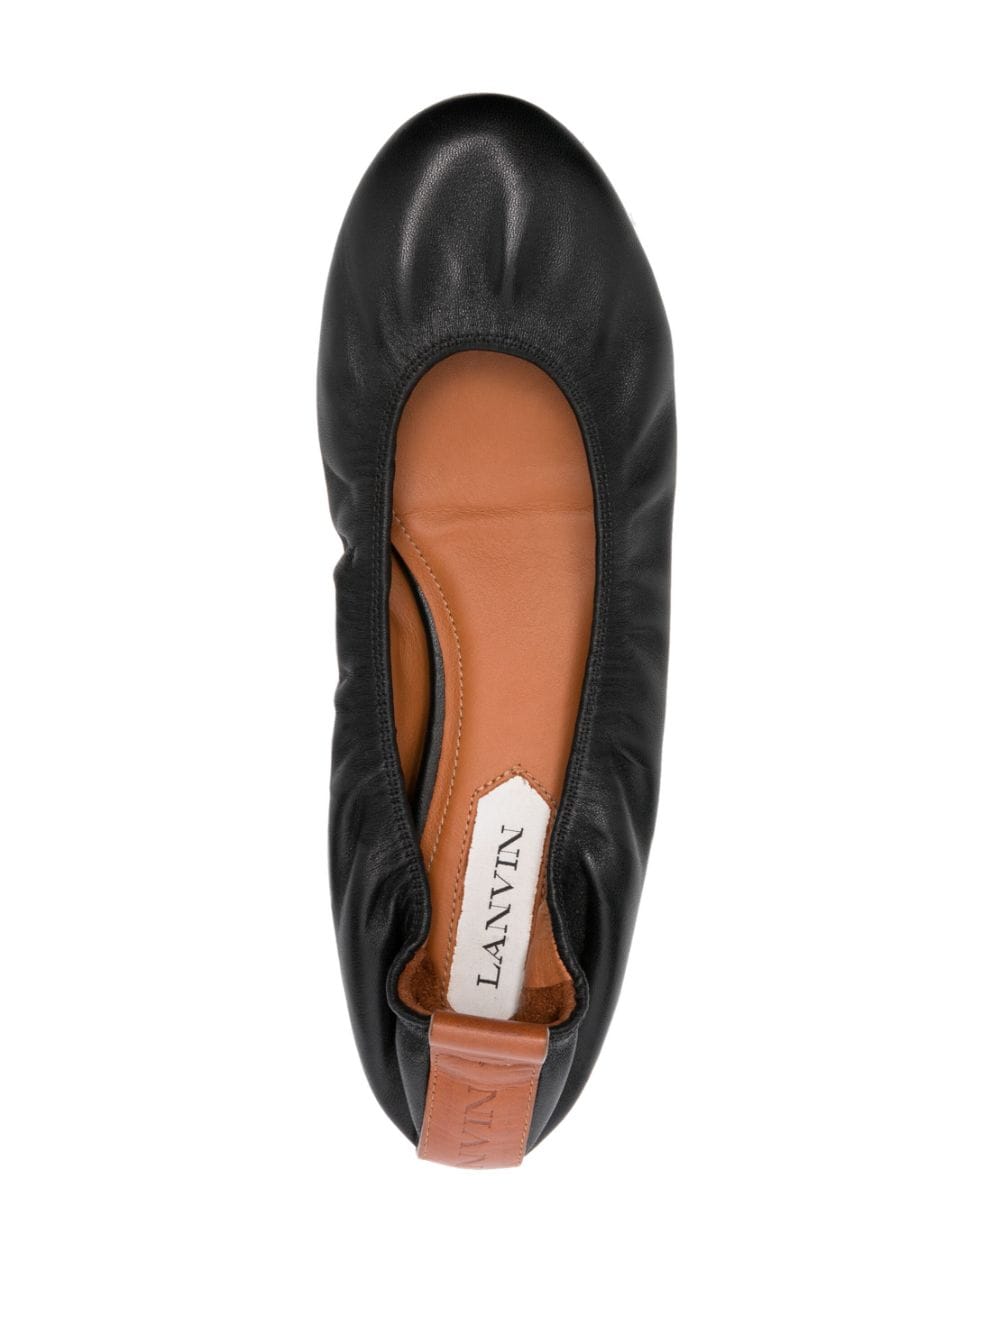 Lanvin Flat Shoes Black